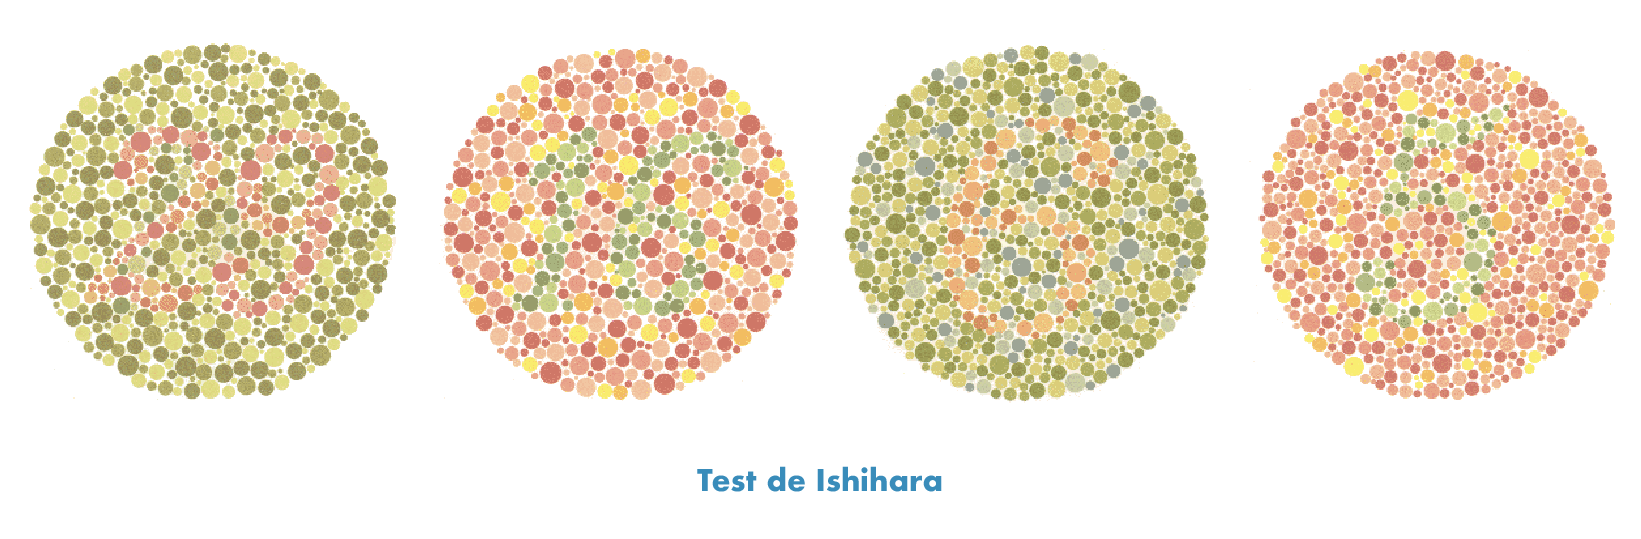 test Ishihara daltonismo